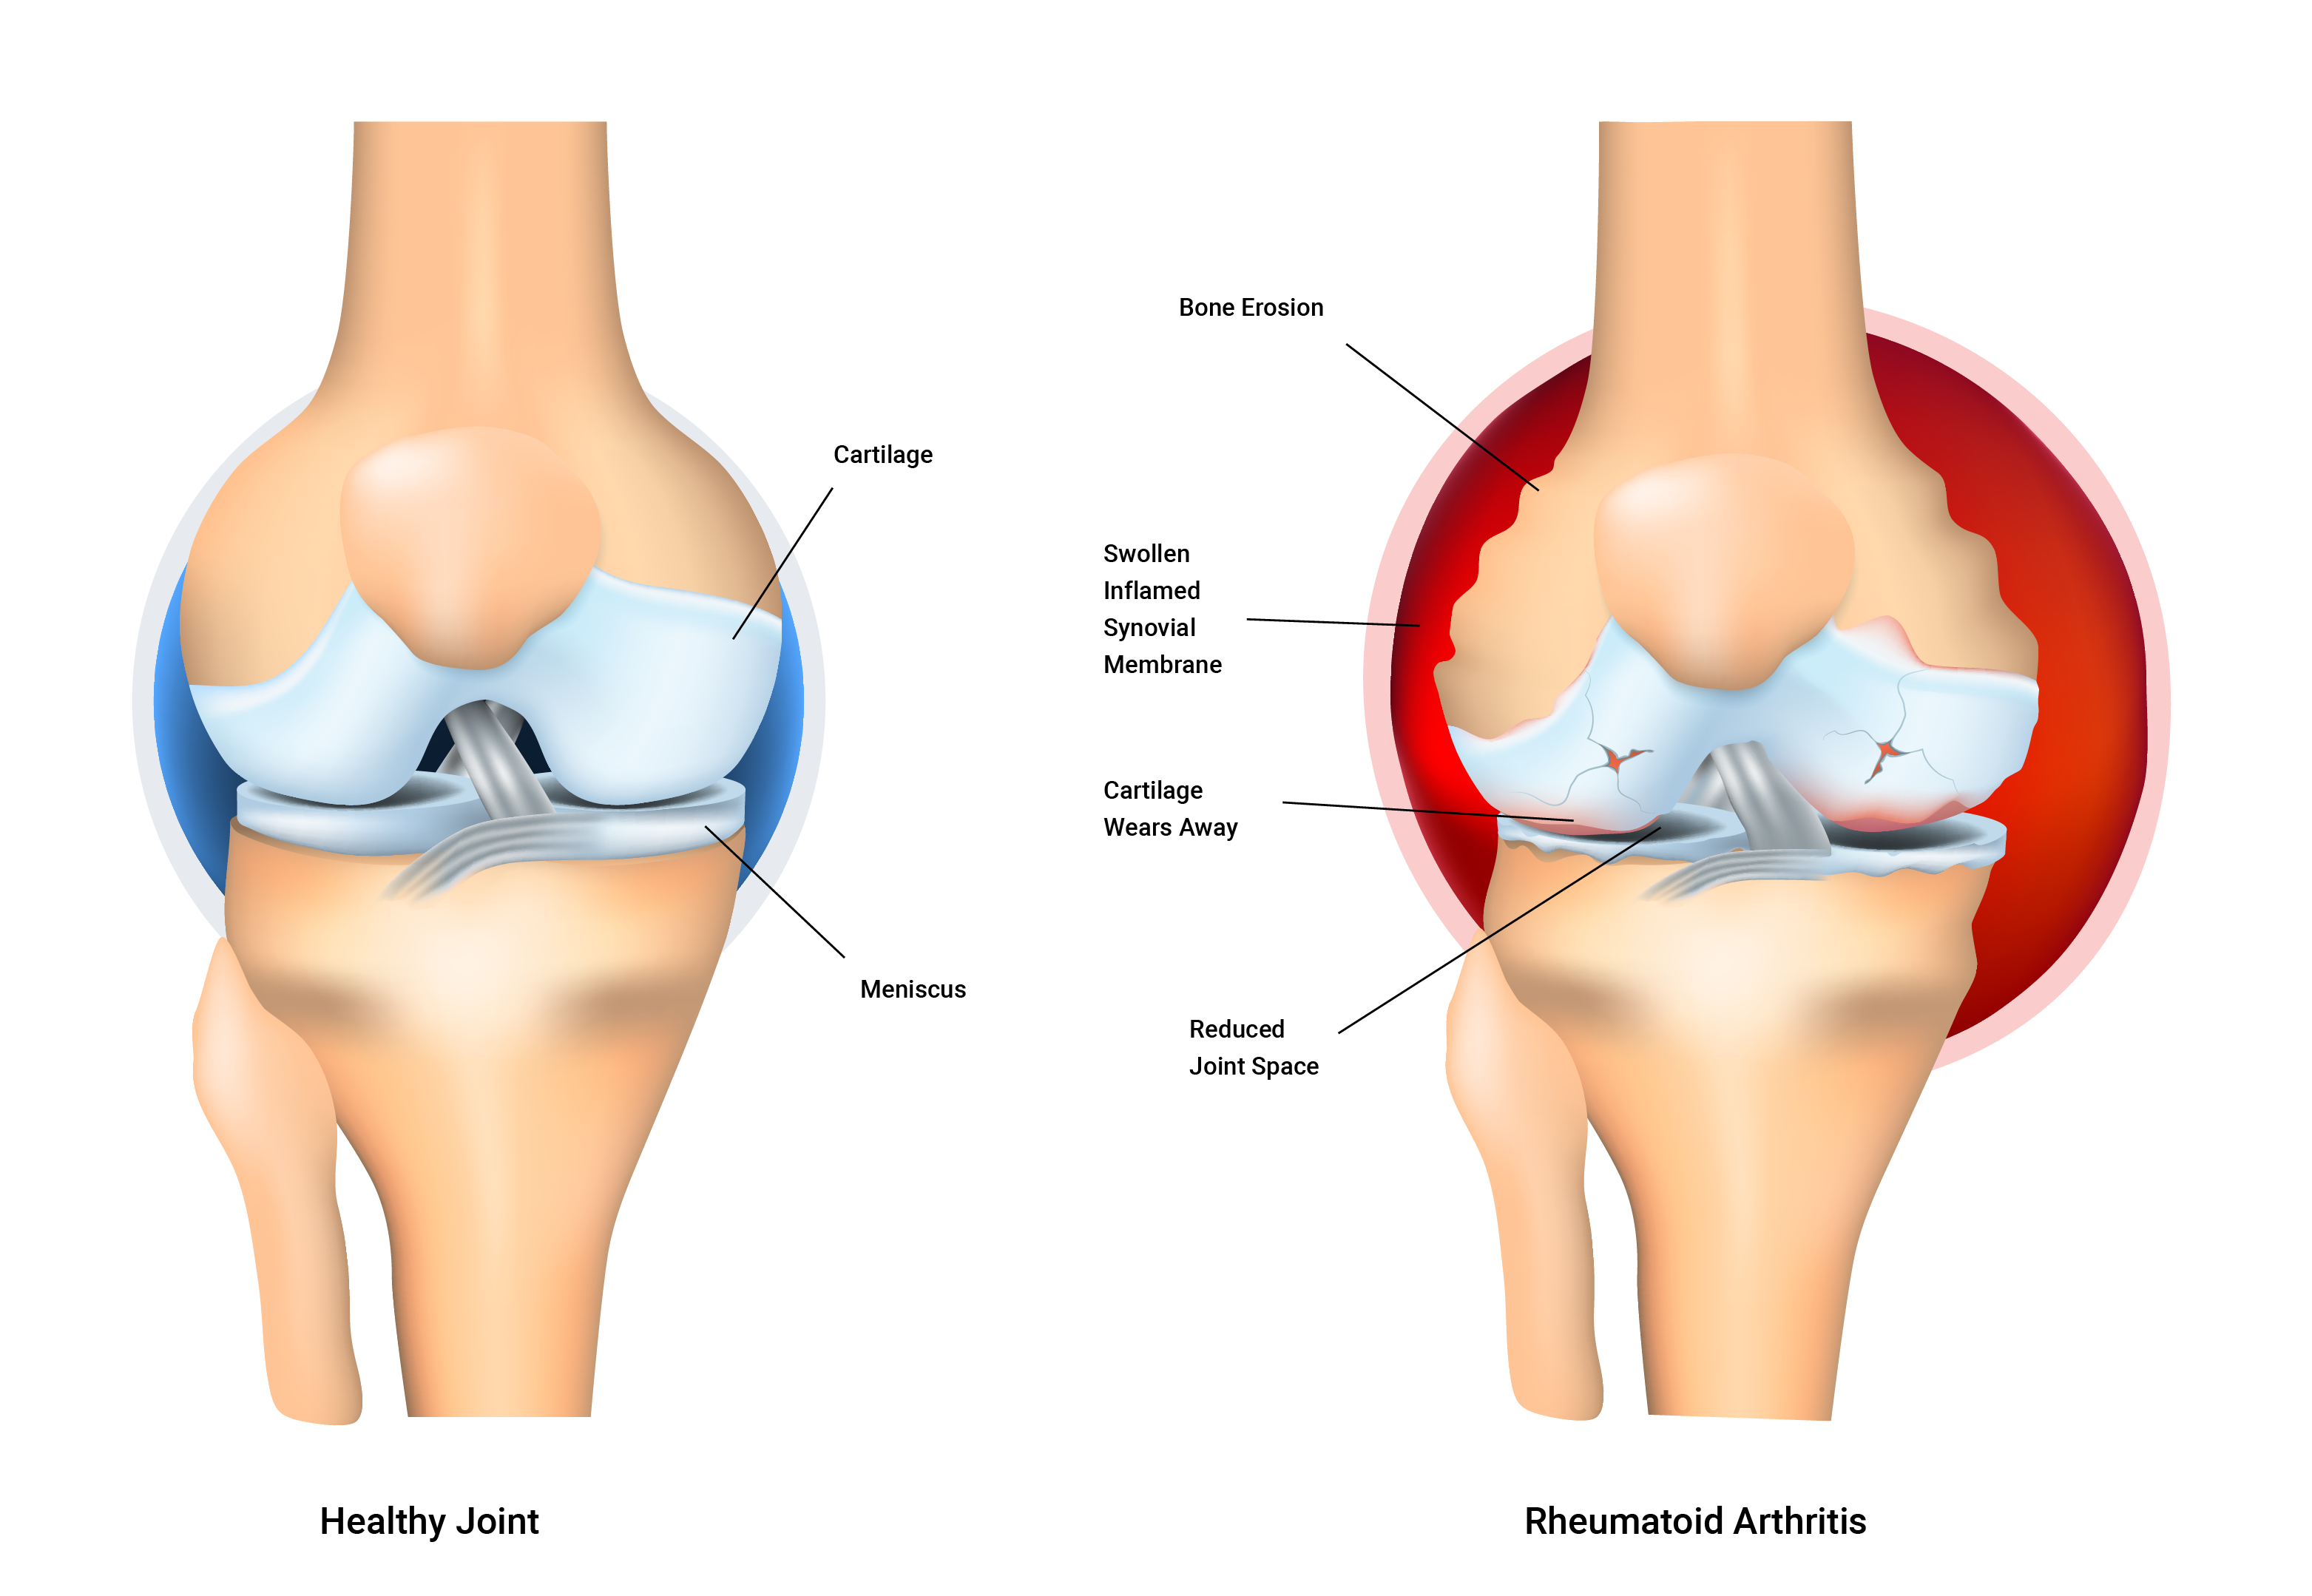 normal joint versus joint with rheumatoid arthritis